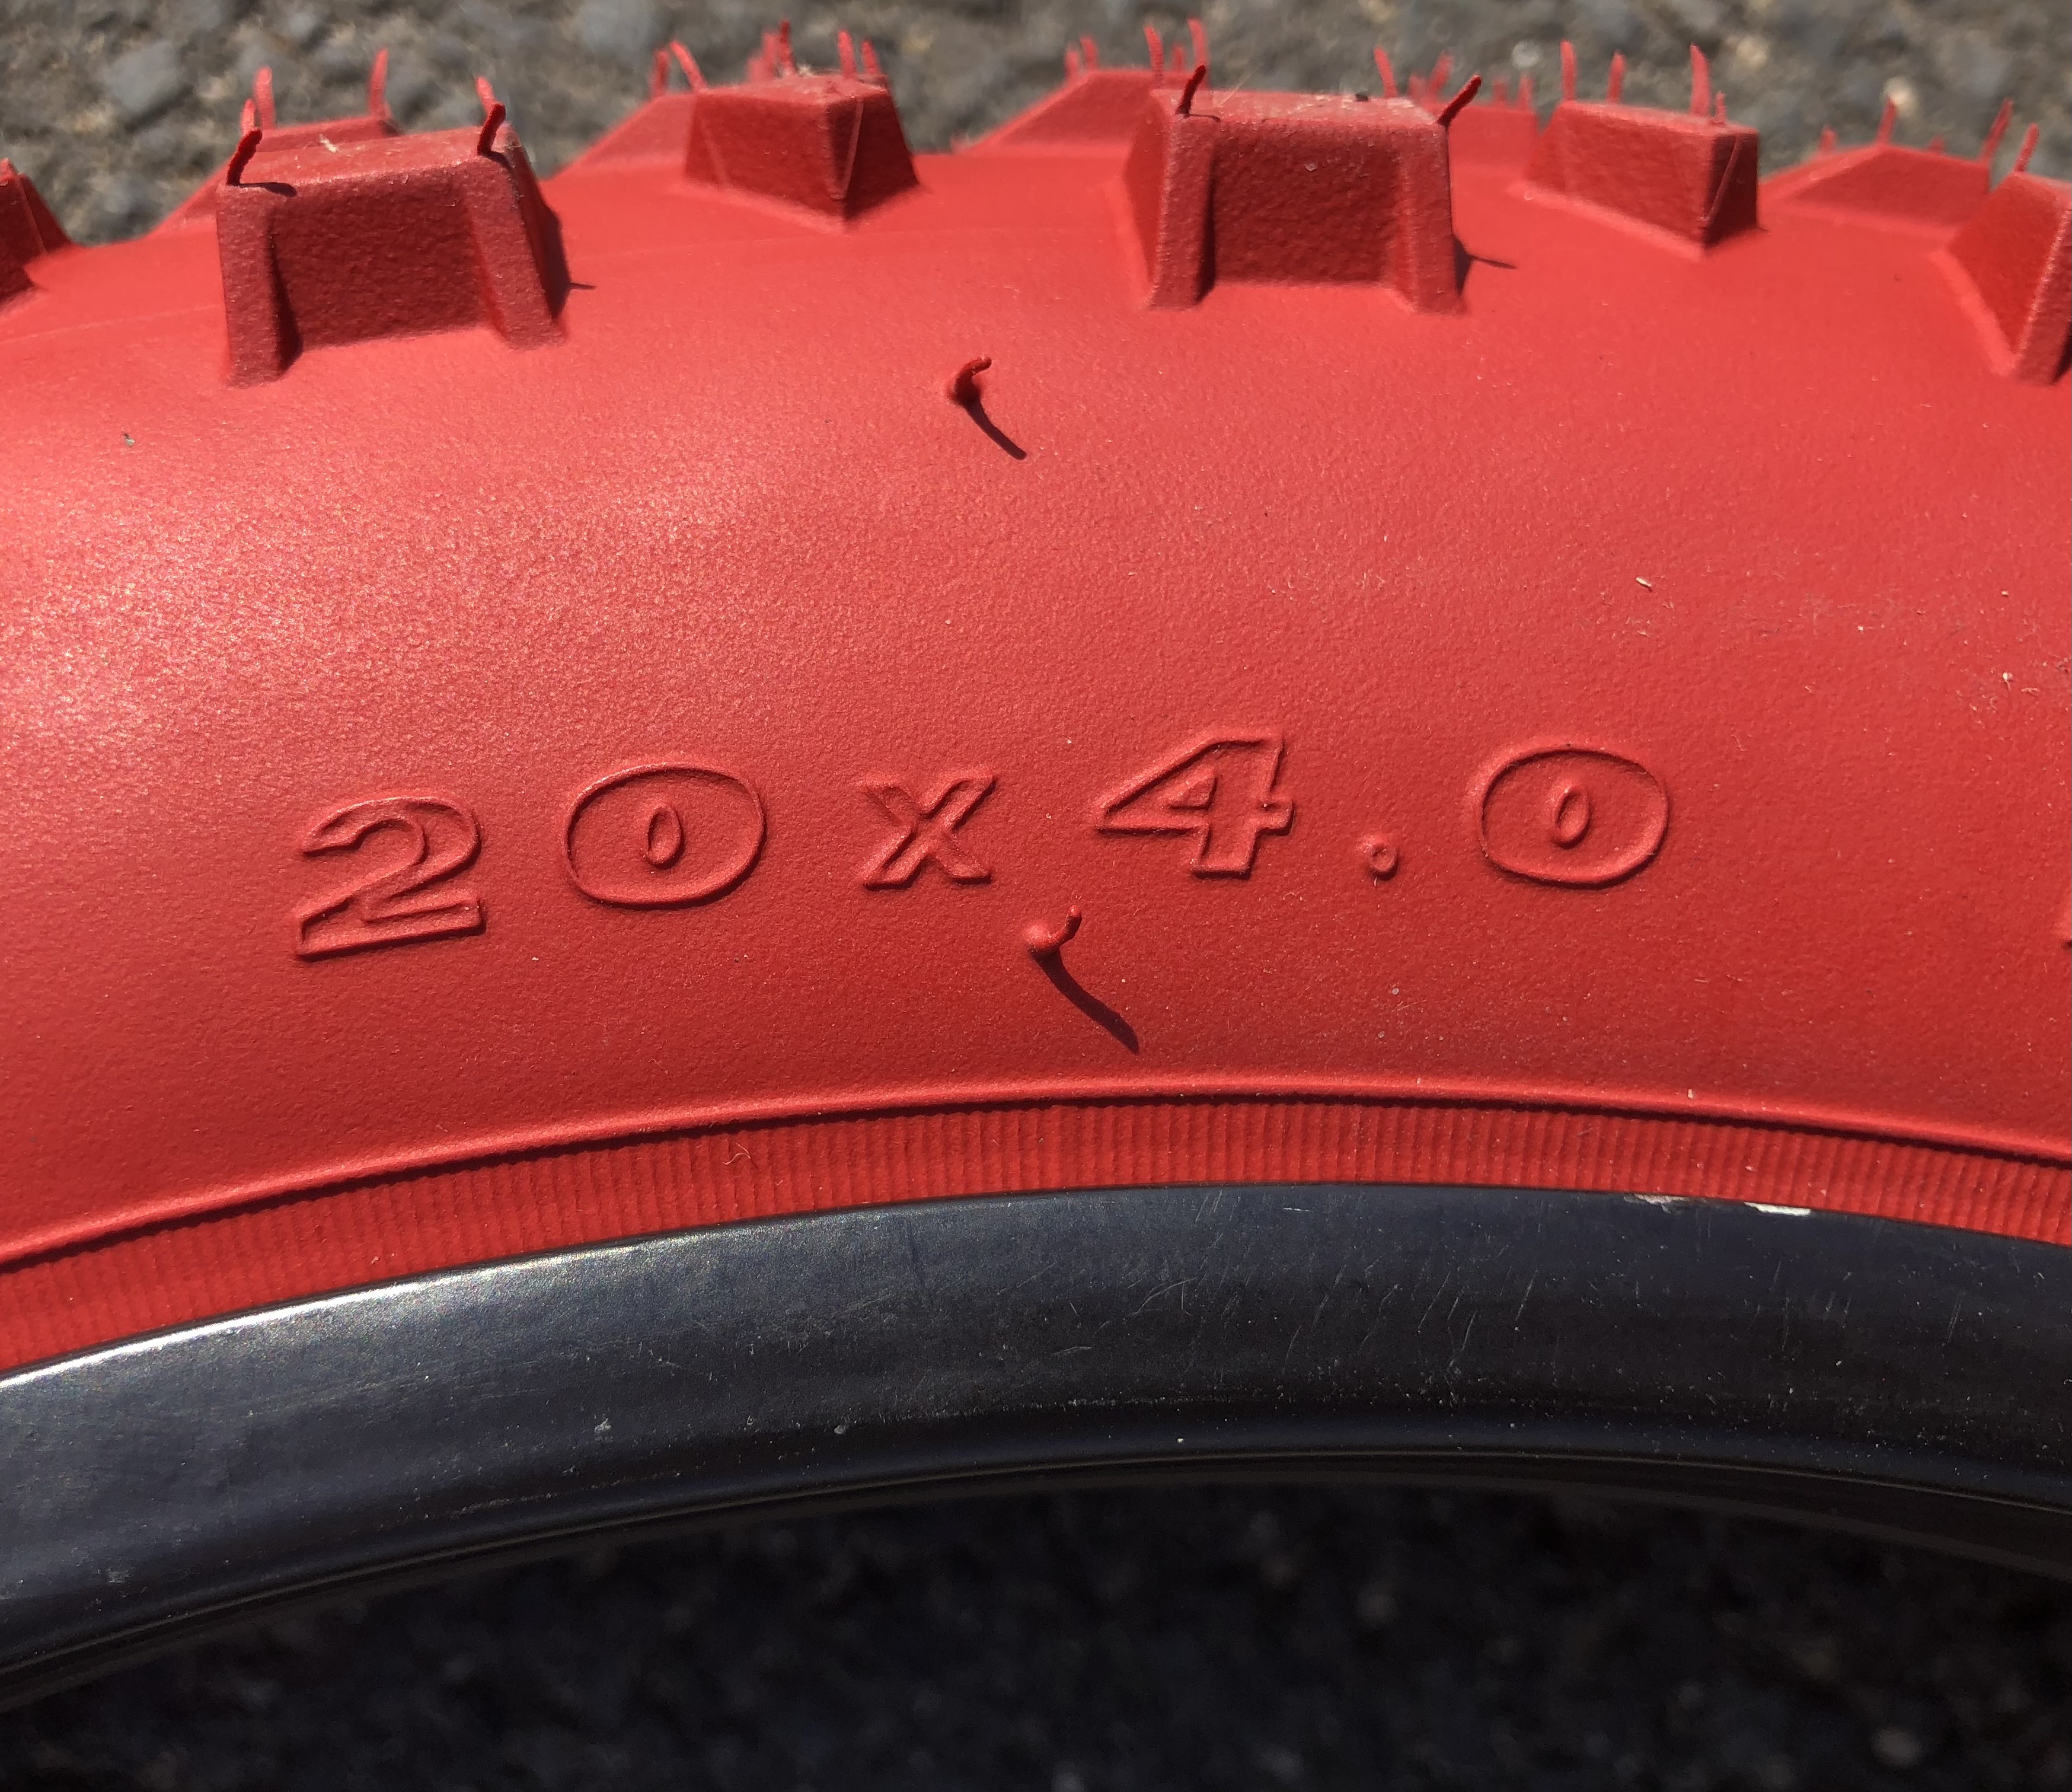 204 Neumáticos  20 x 4 rojo